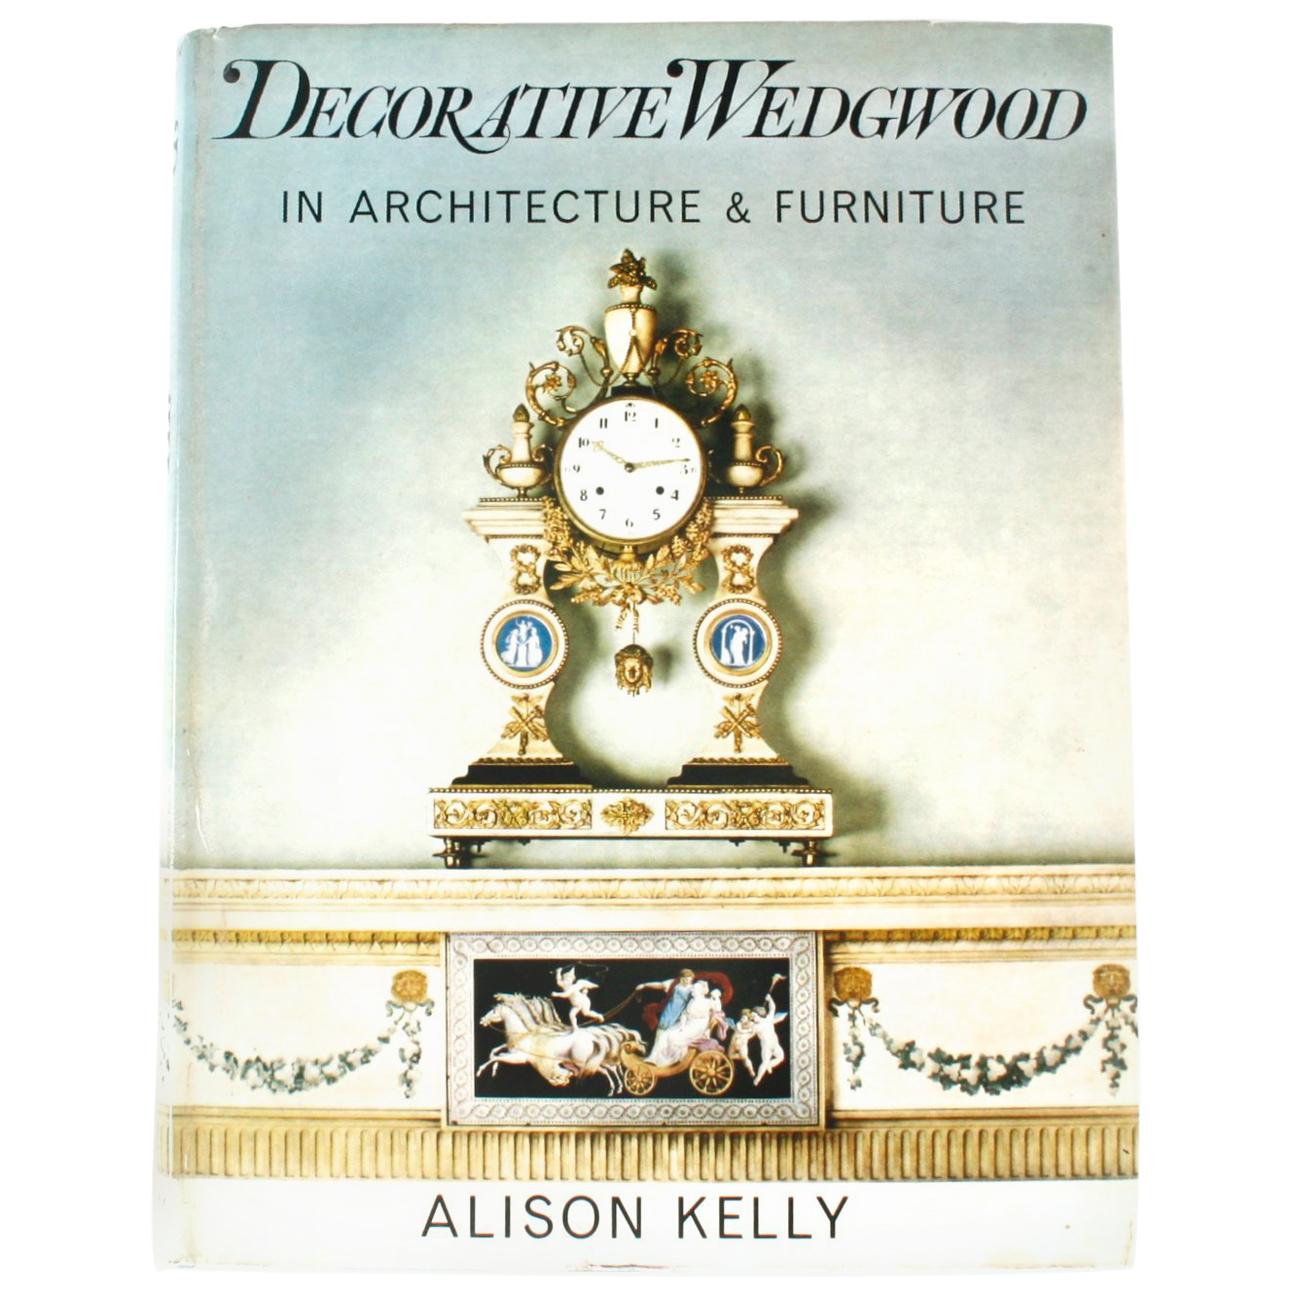 1ère édition de la collection décorative Wedgwood par Alison Kelly, signée et inscrite